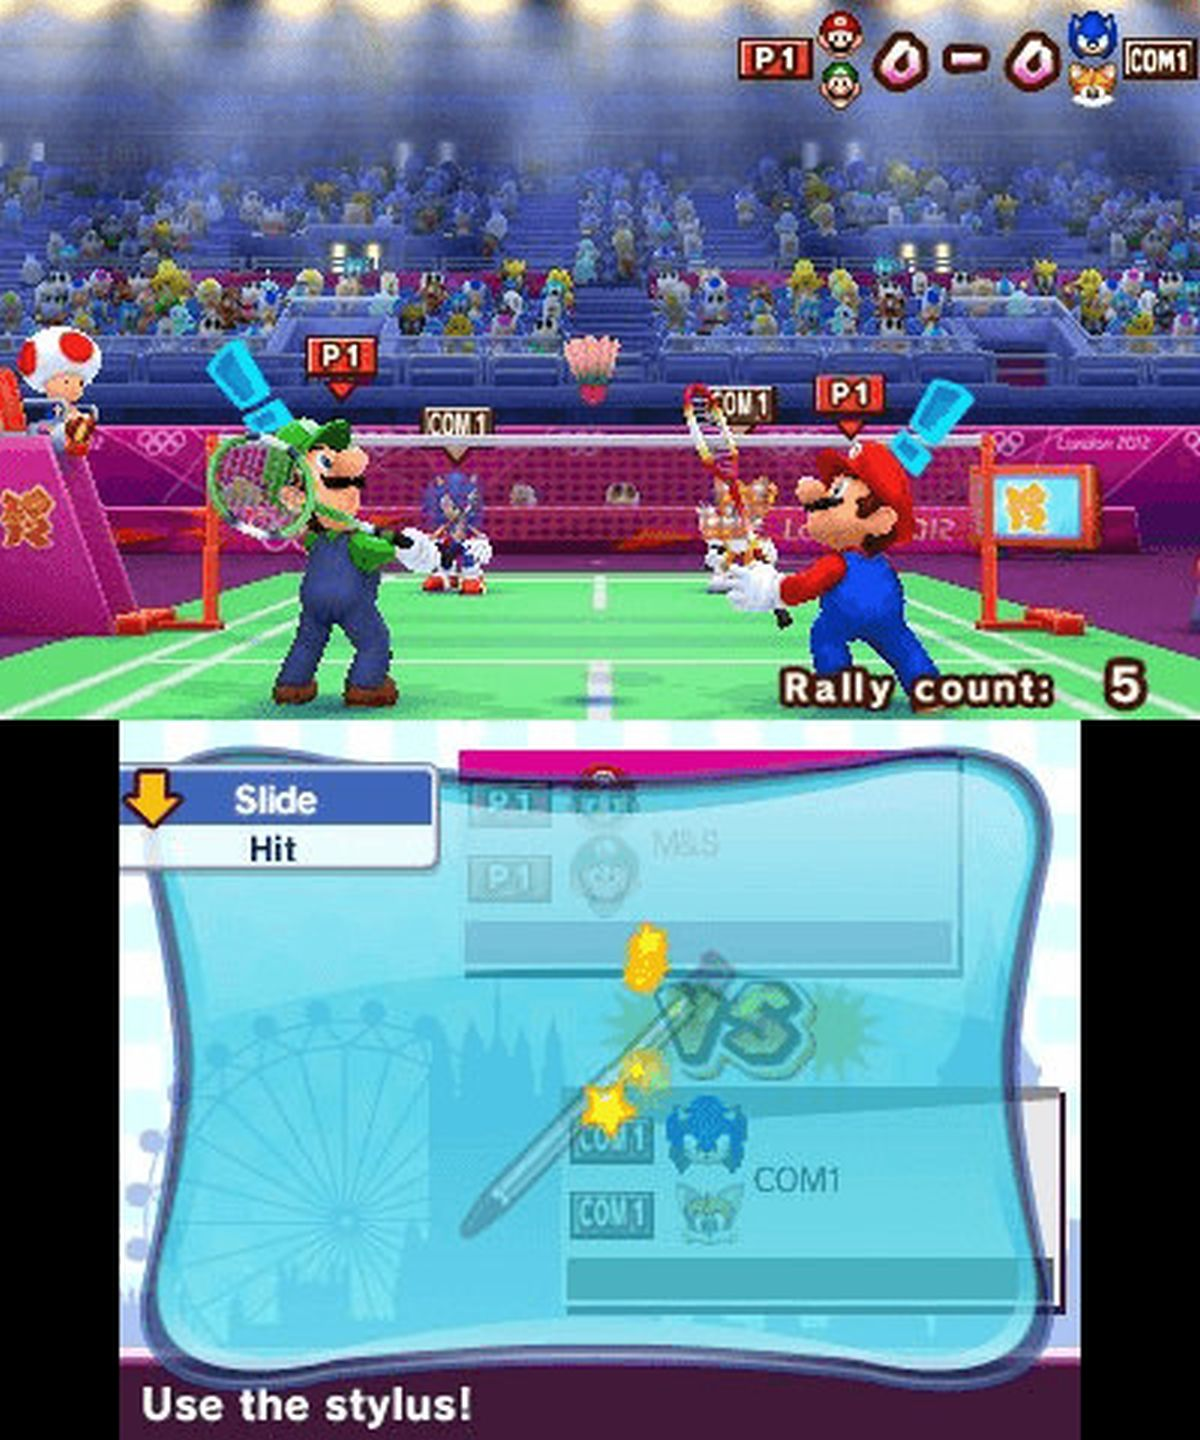 bei - 2012 3DS] & - olympischen London Spielen Mario Sonic [Nintendo den